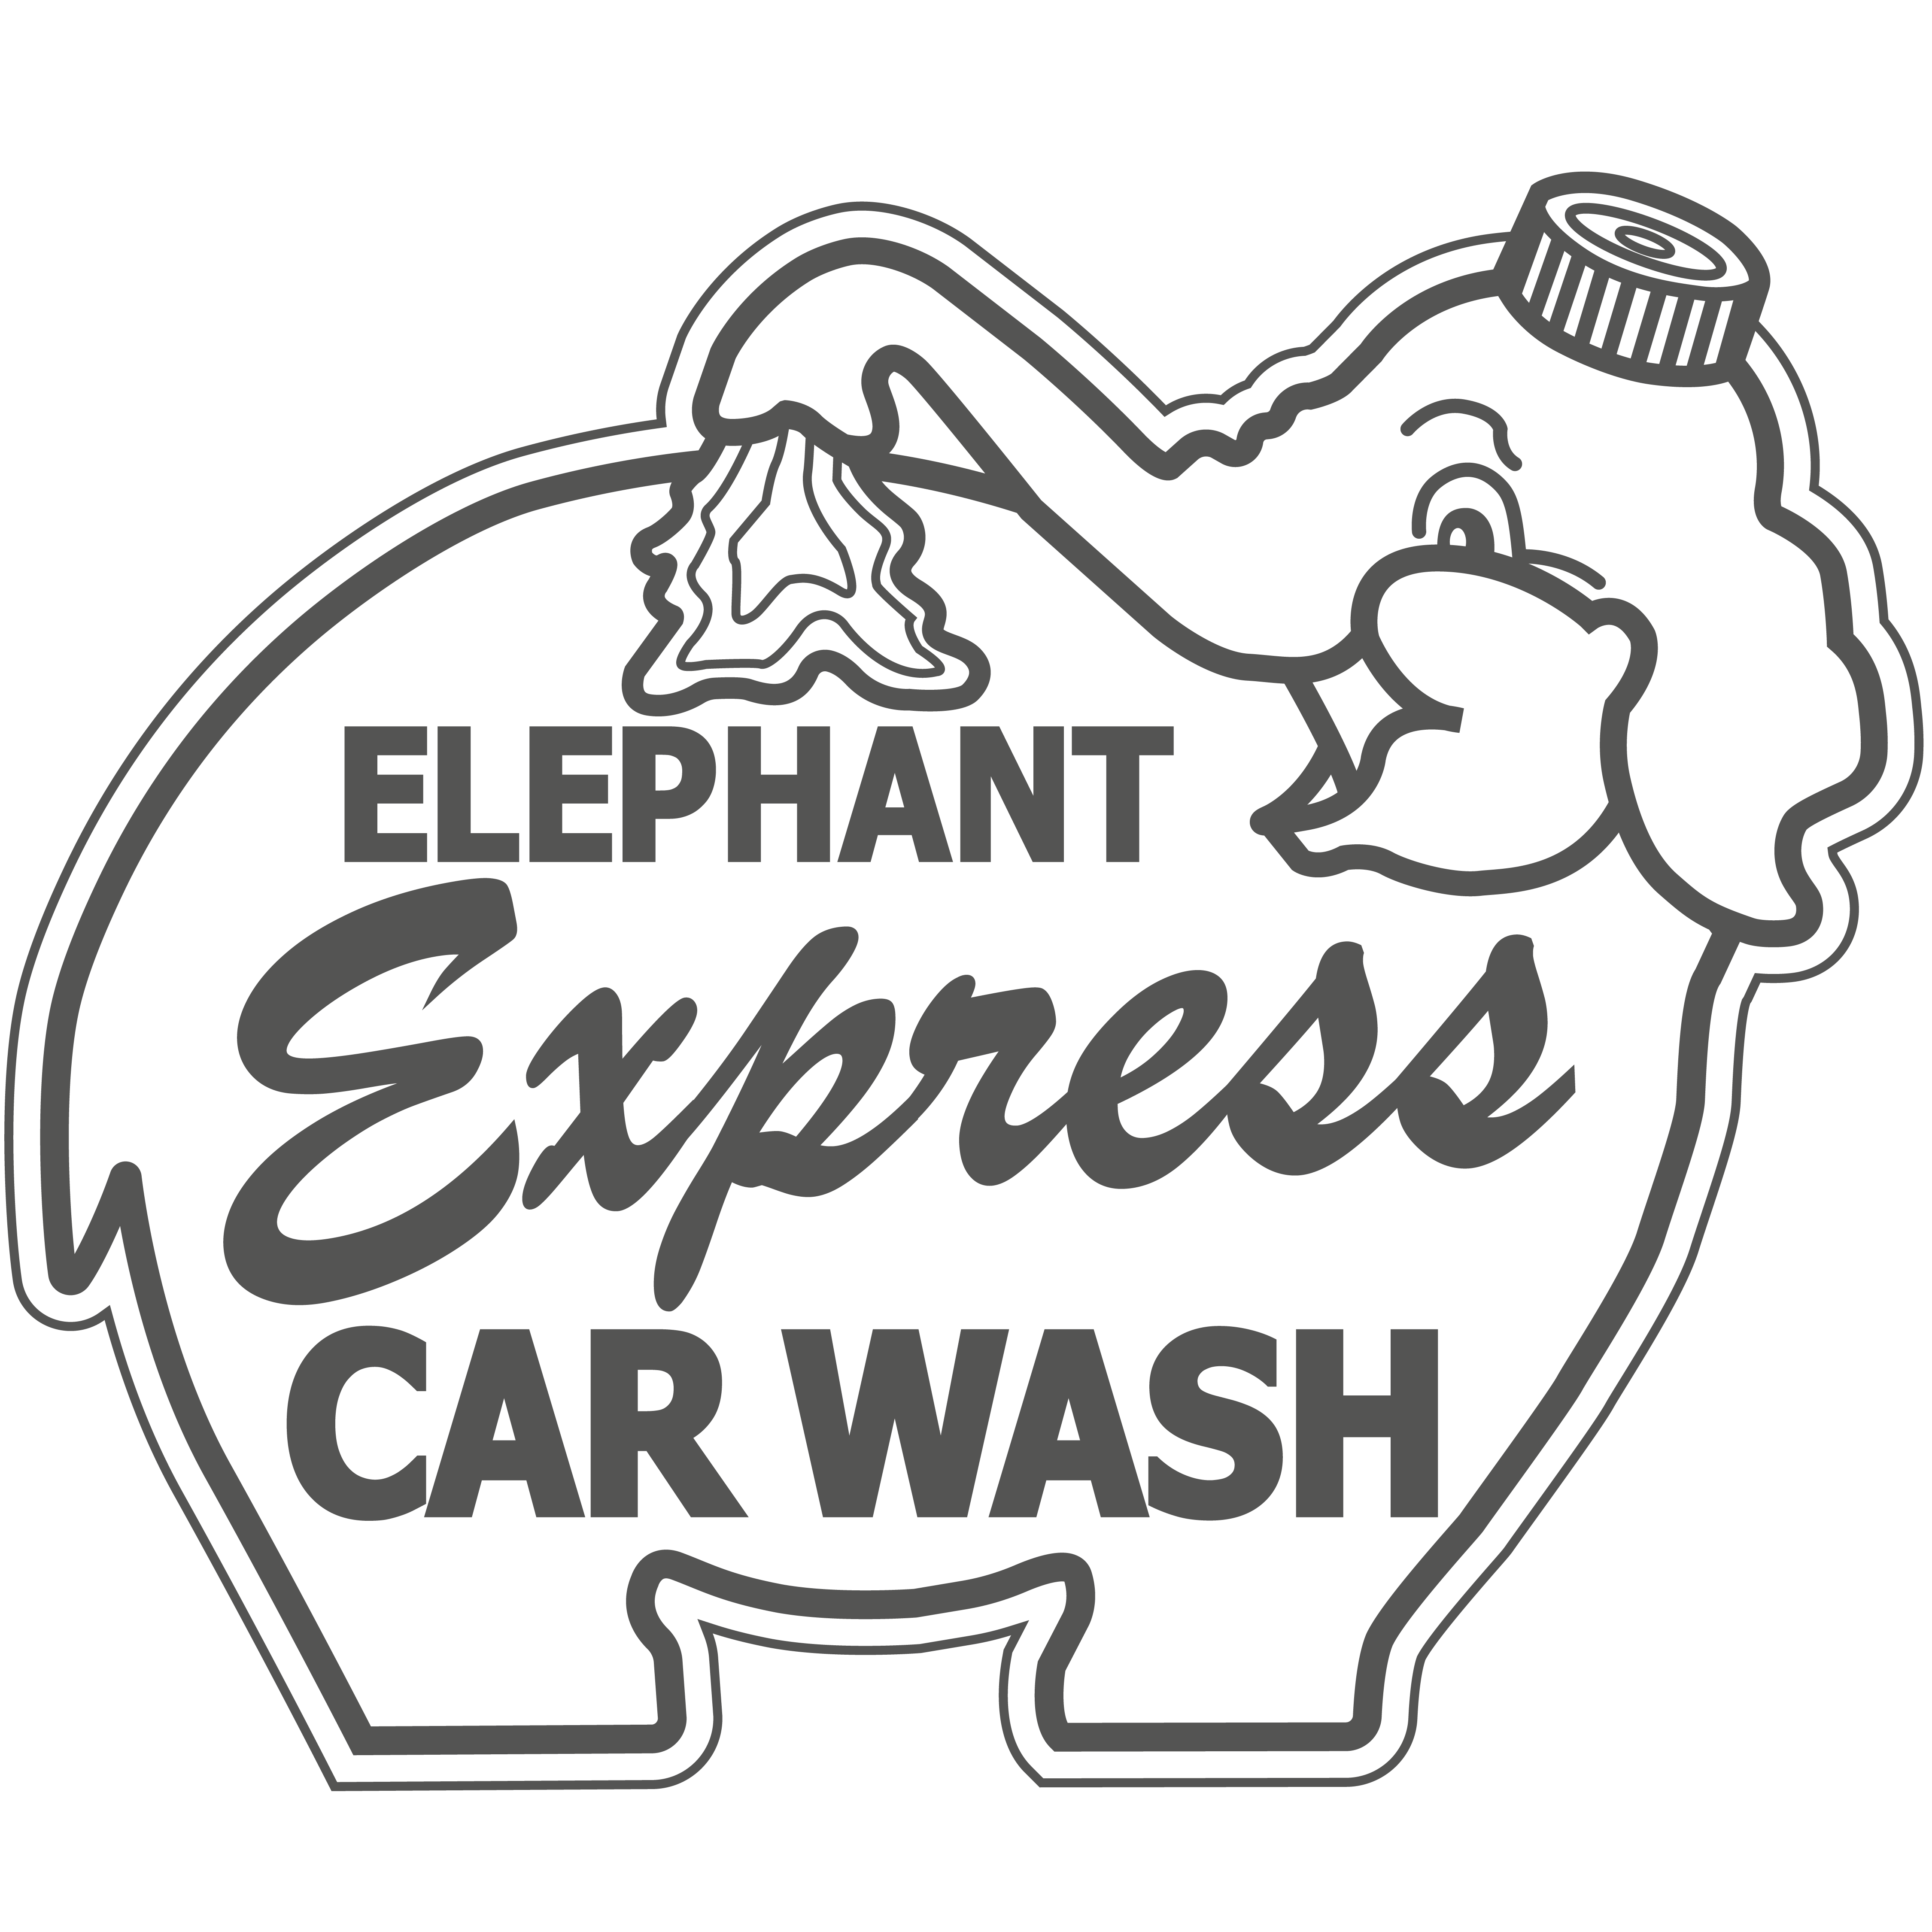 Elephant Express Carwash